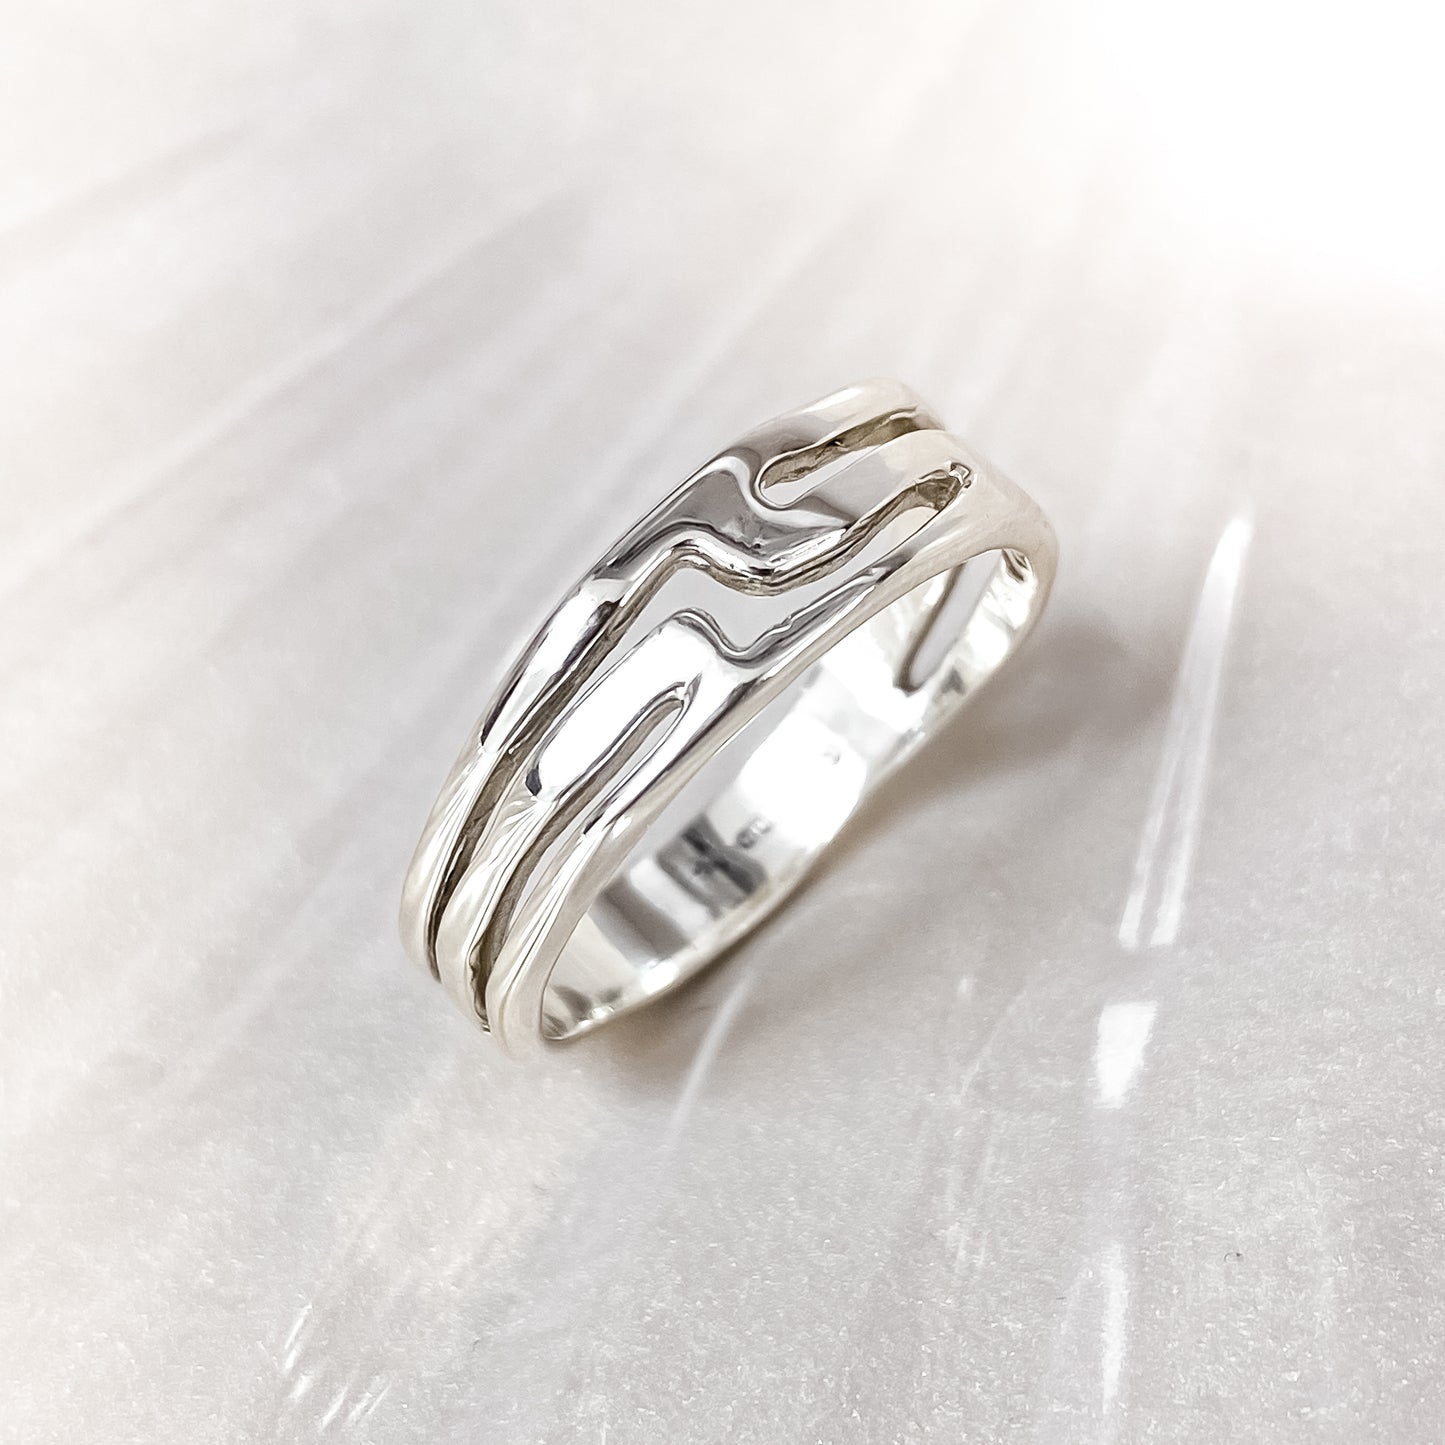 White Gold Organic Design Ring